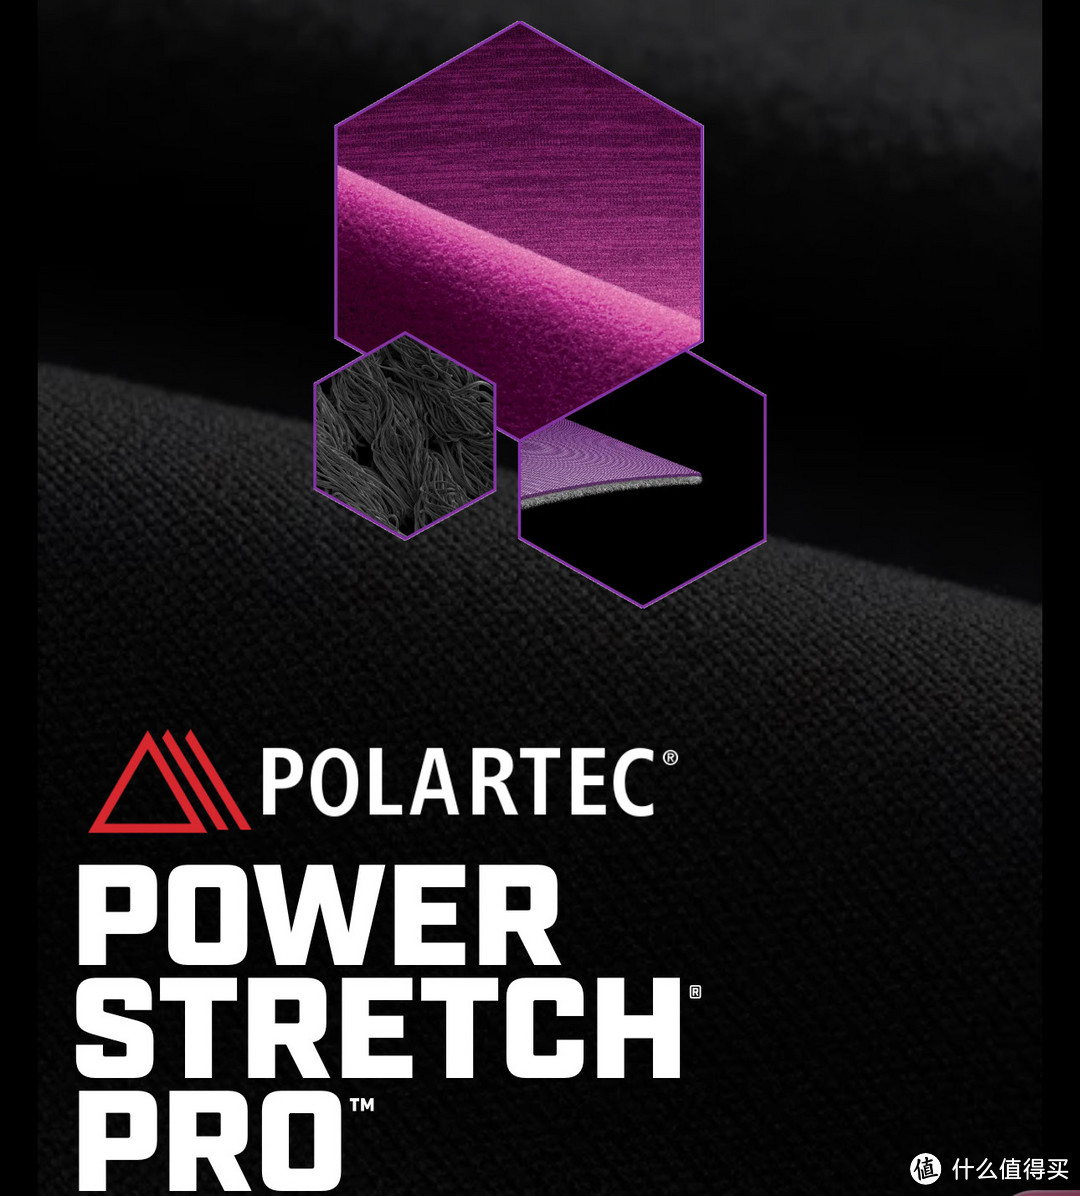 先进的双表面针织结构为Power Stretch® Pro™提供了足够的抗拉强度和耐磨性，以实现持久的形状恢复。性能排汗能力意味着它能跟上任何活动。